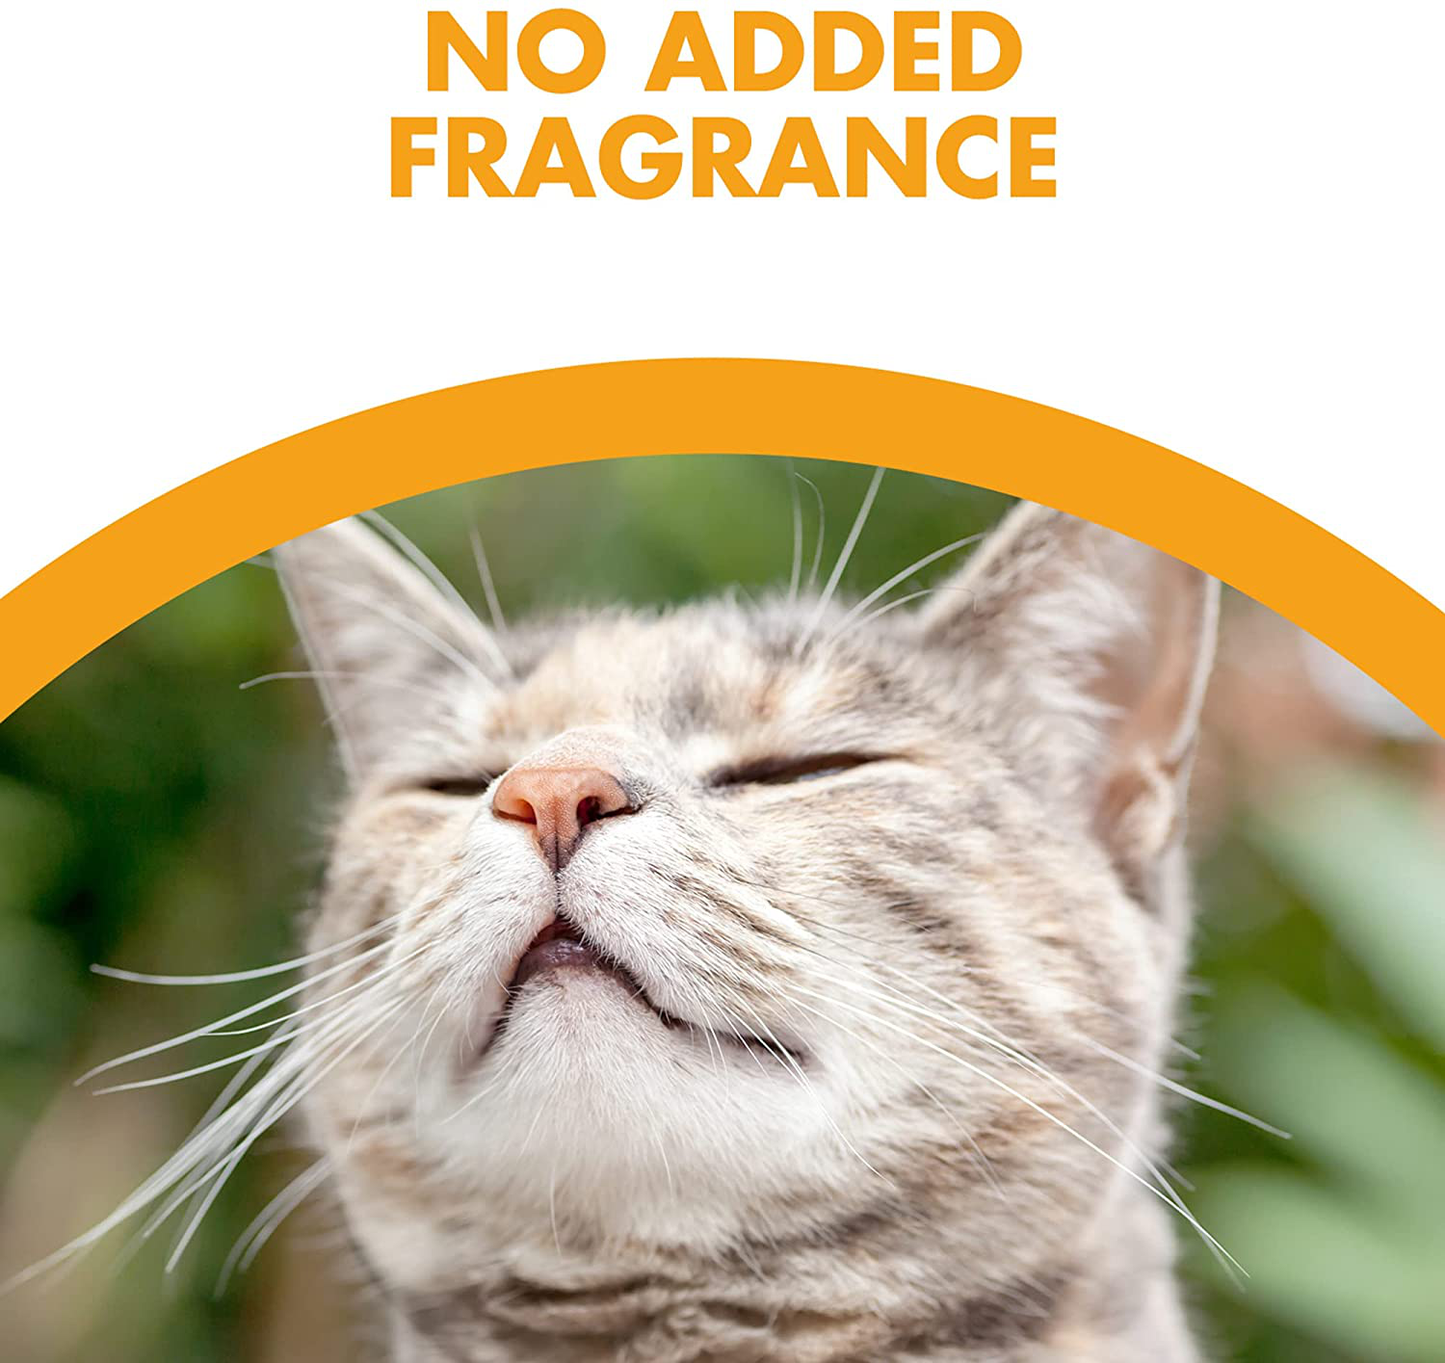 Feline Pine Cat Litter Animals & Pet Supplies > Pet Supplies > Cat Supplies > Cat Litter Feline Pine   